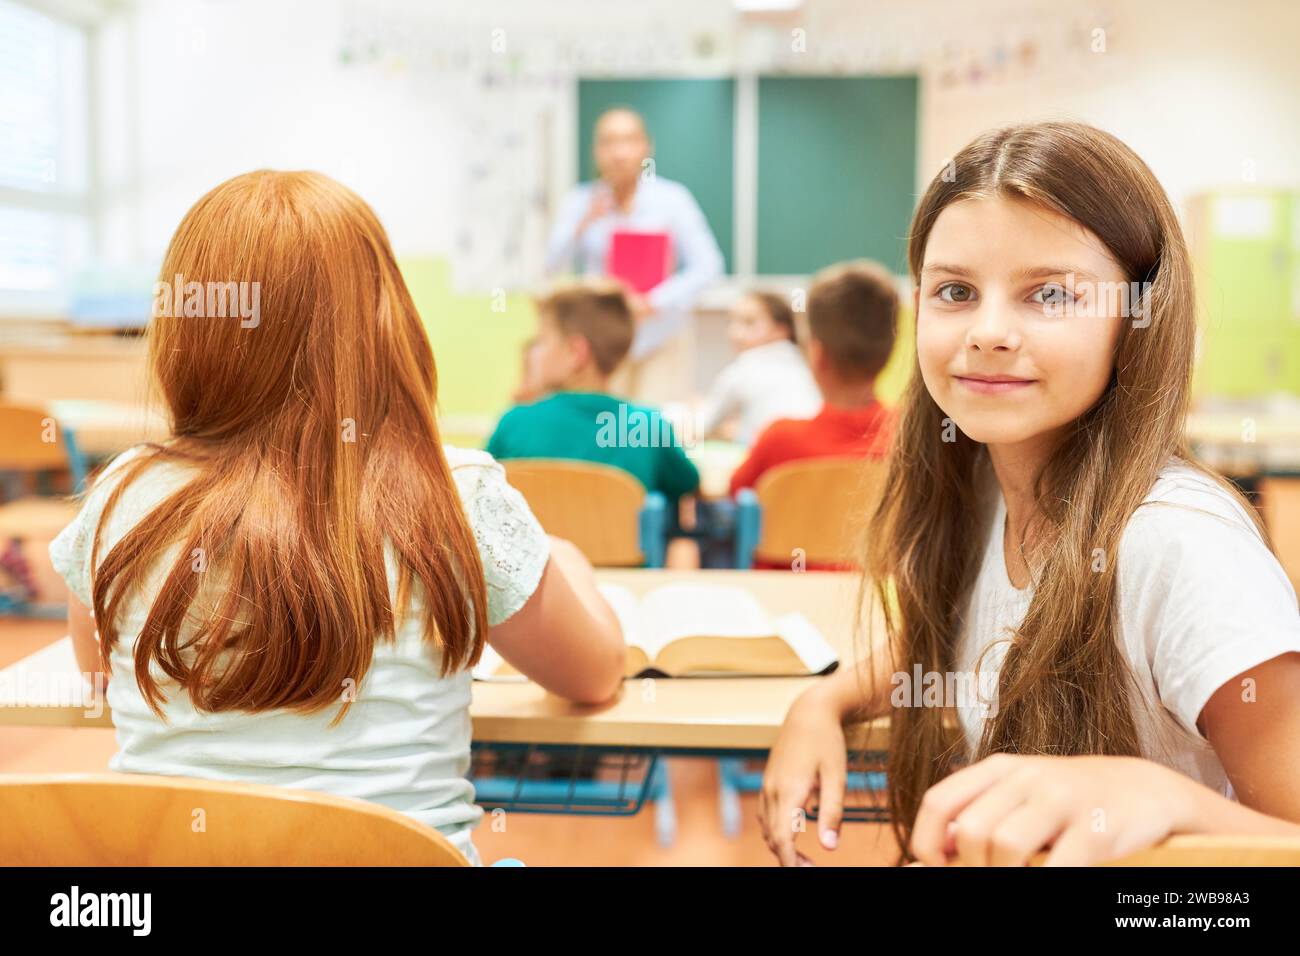 Ritratto di una studentessa elementare sorridente seduta con un'amica in classe Foto Stock